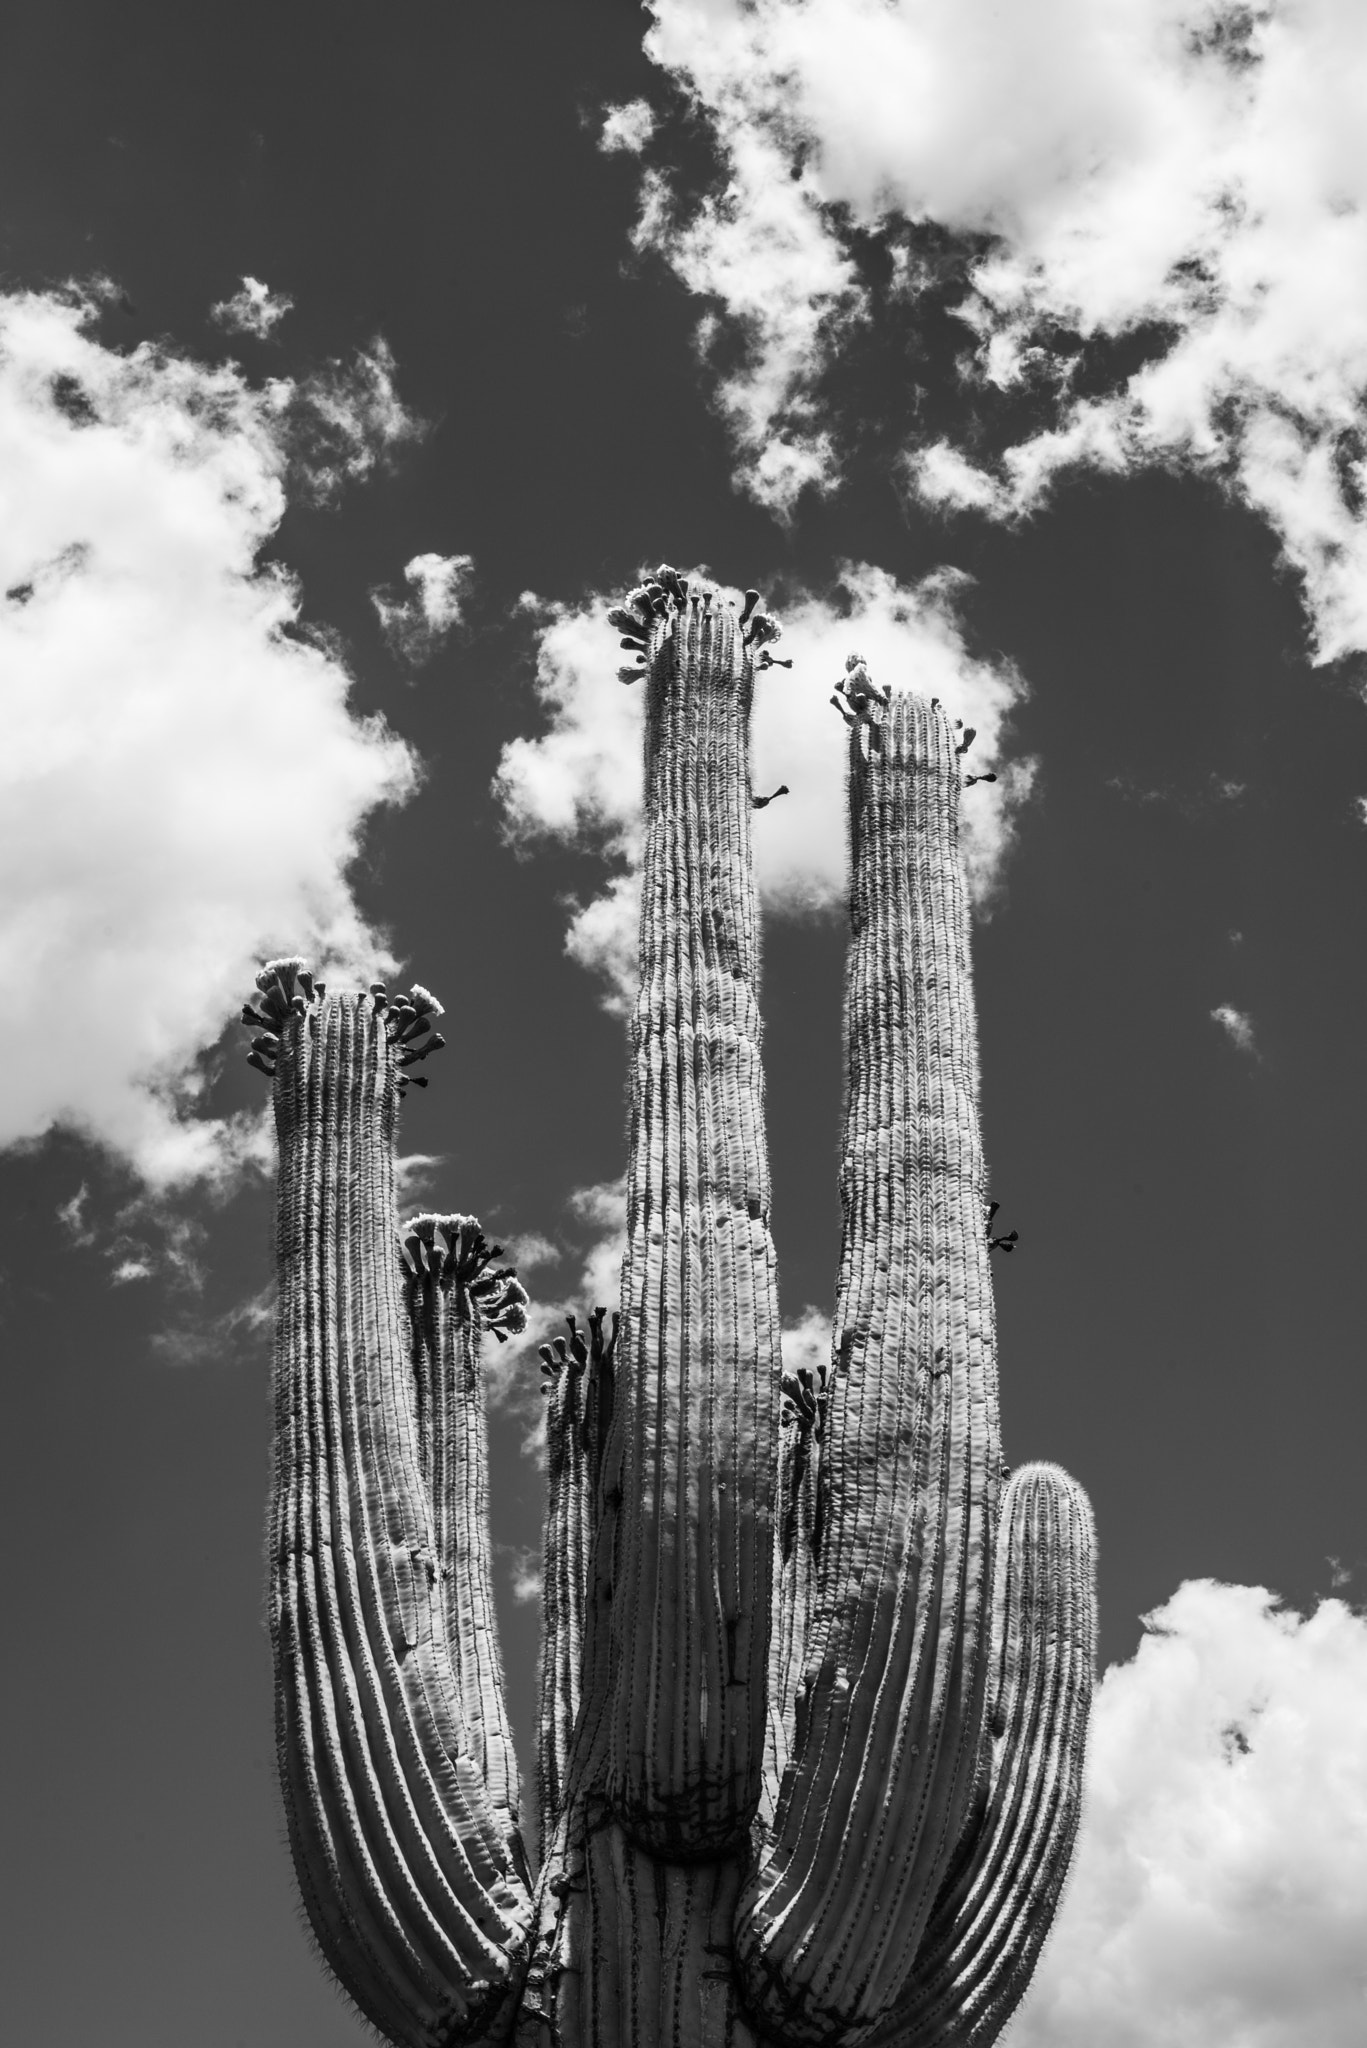 AF-S Nikkor 35mm f/1.8G sample photo. Cactus sky photography